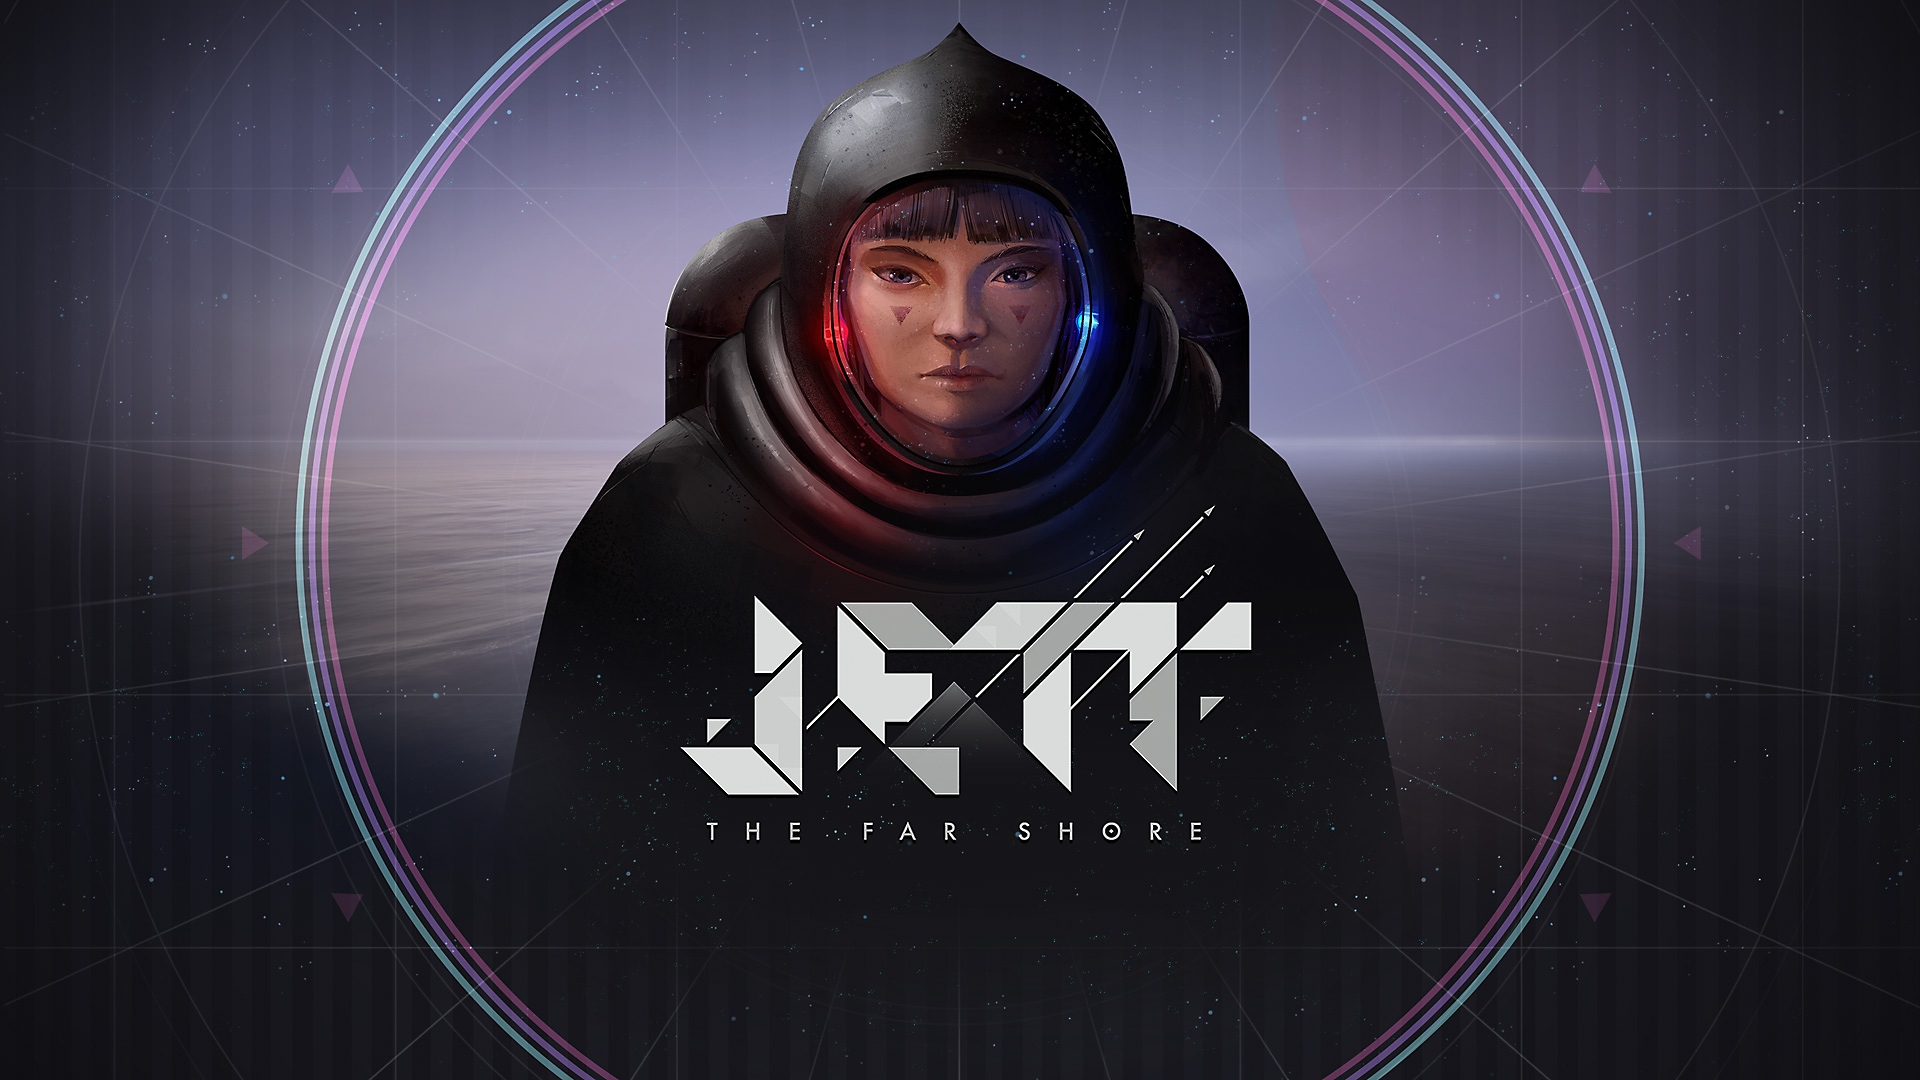 Jett: The Far Shore – arte principal